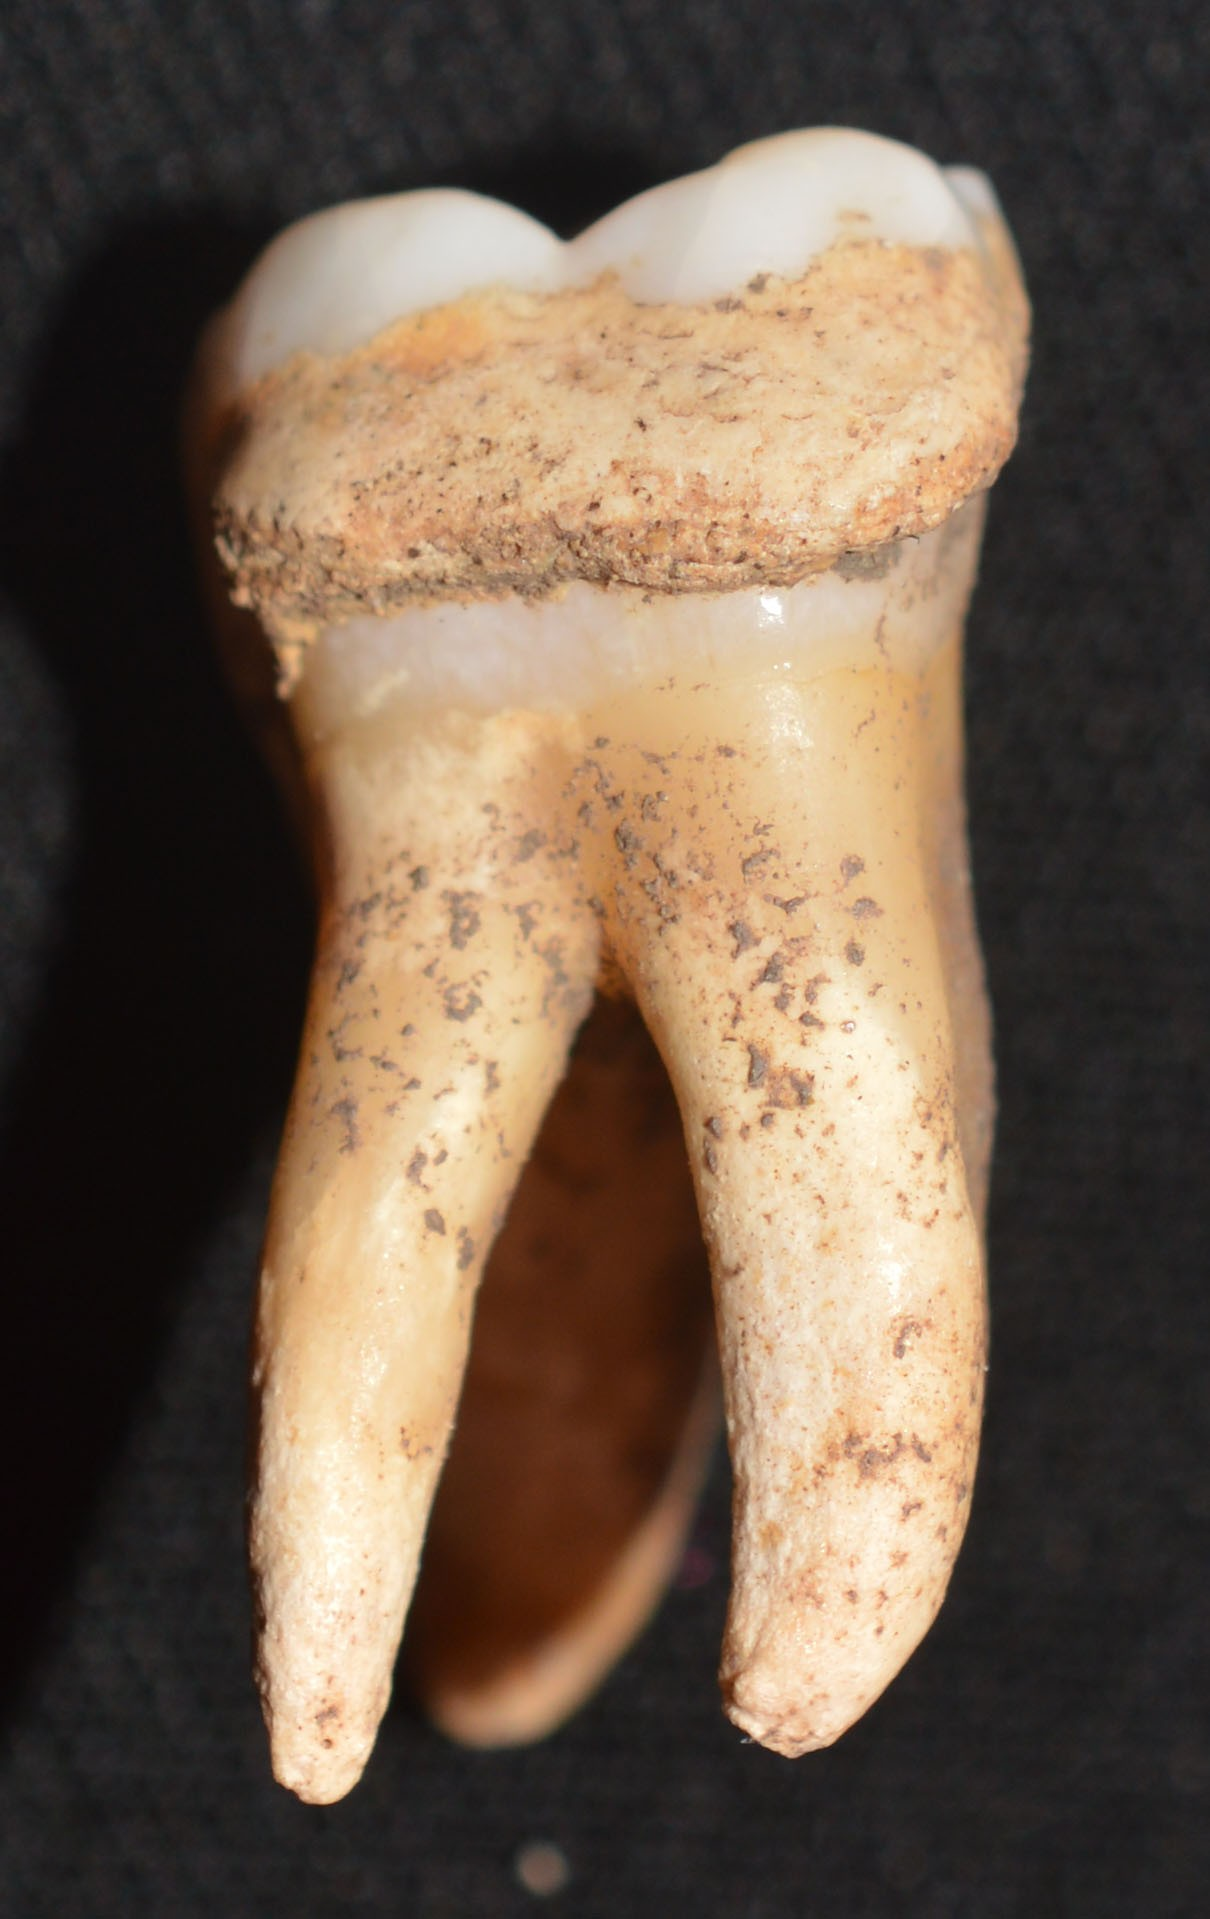 Τερηδόνα σε γομφίο της κάτω γνάθου: γνάθου χαρακτηρίζεται από τη μη αναστρέψιμη και σταδιακή χημική αποσύνθεση των οδοντικών ιστών από οξέα που εκλύονται από τη βακτηριακή ζύμωση υδατανθράκων Το